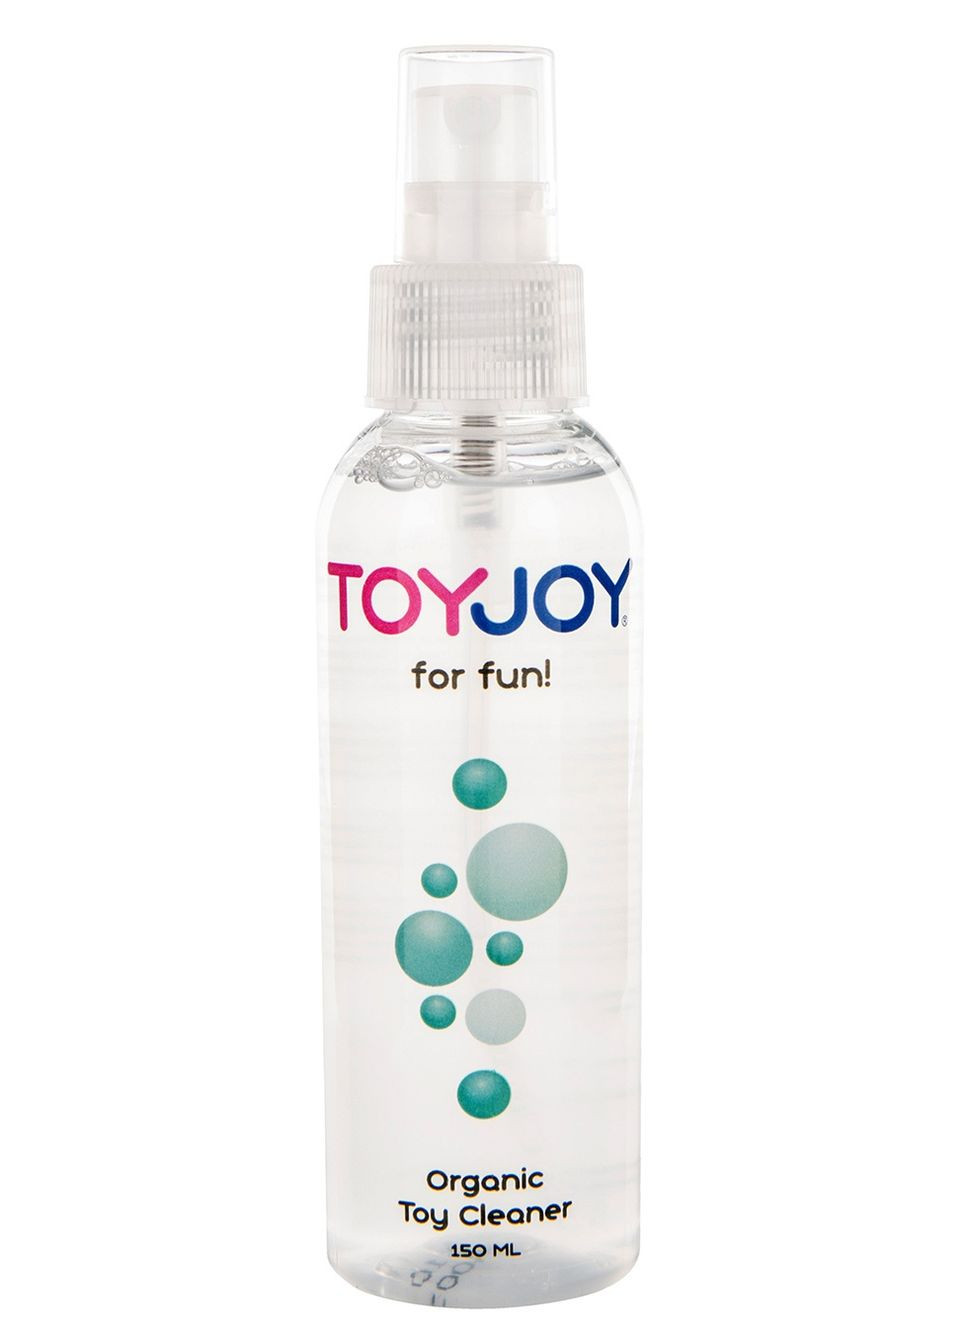 Очищающий спрей для интимных игрушек Toy Cleaner, 150 мл. Toy Joy (260536115)